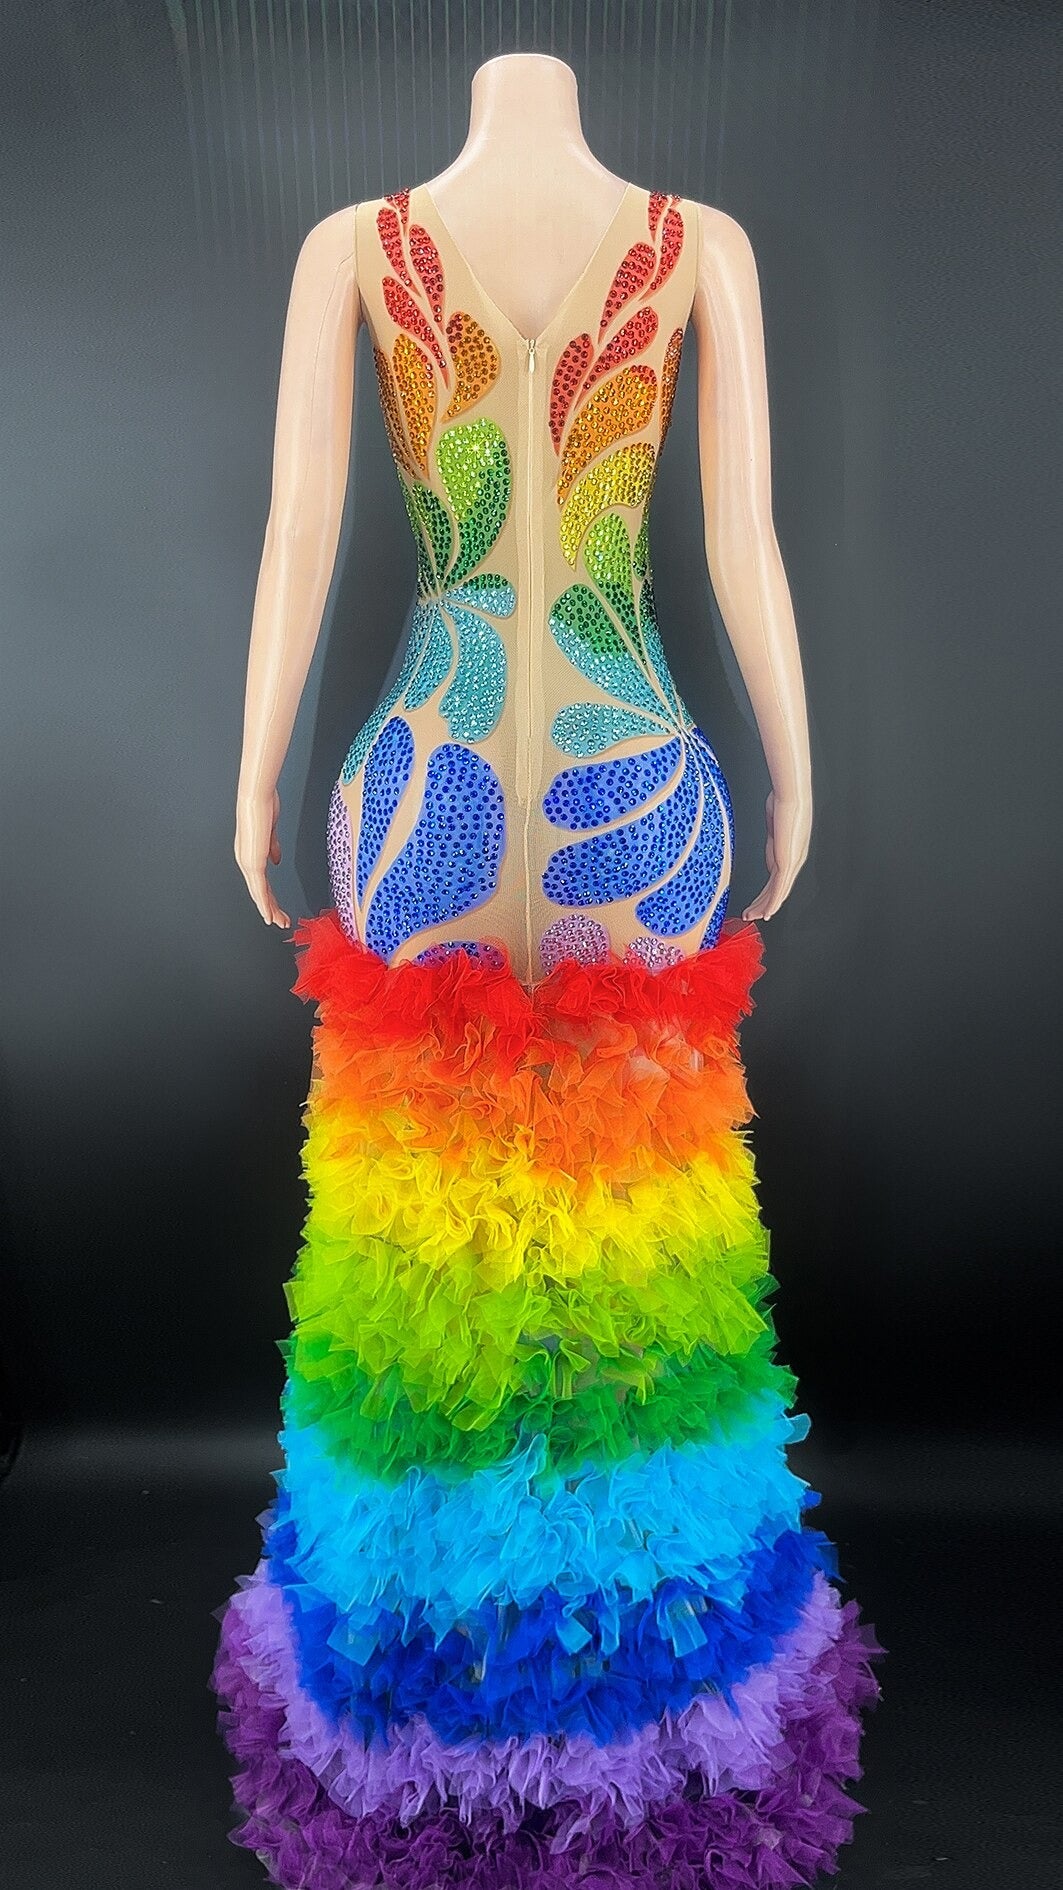 Rainbow Pride Cha Cha Dress